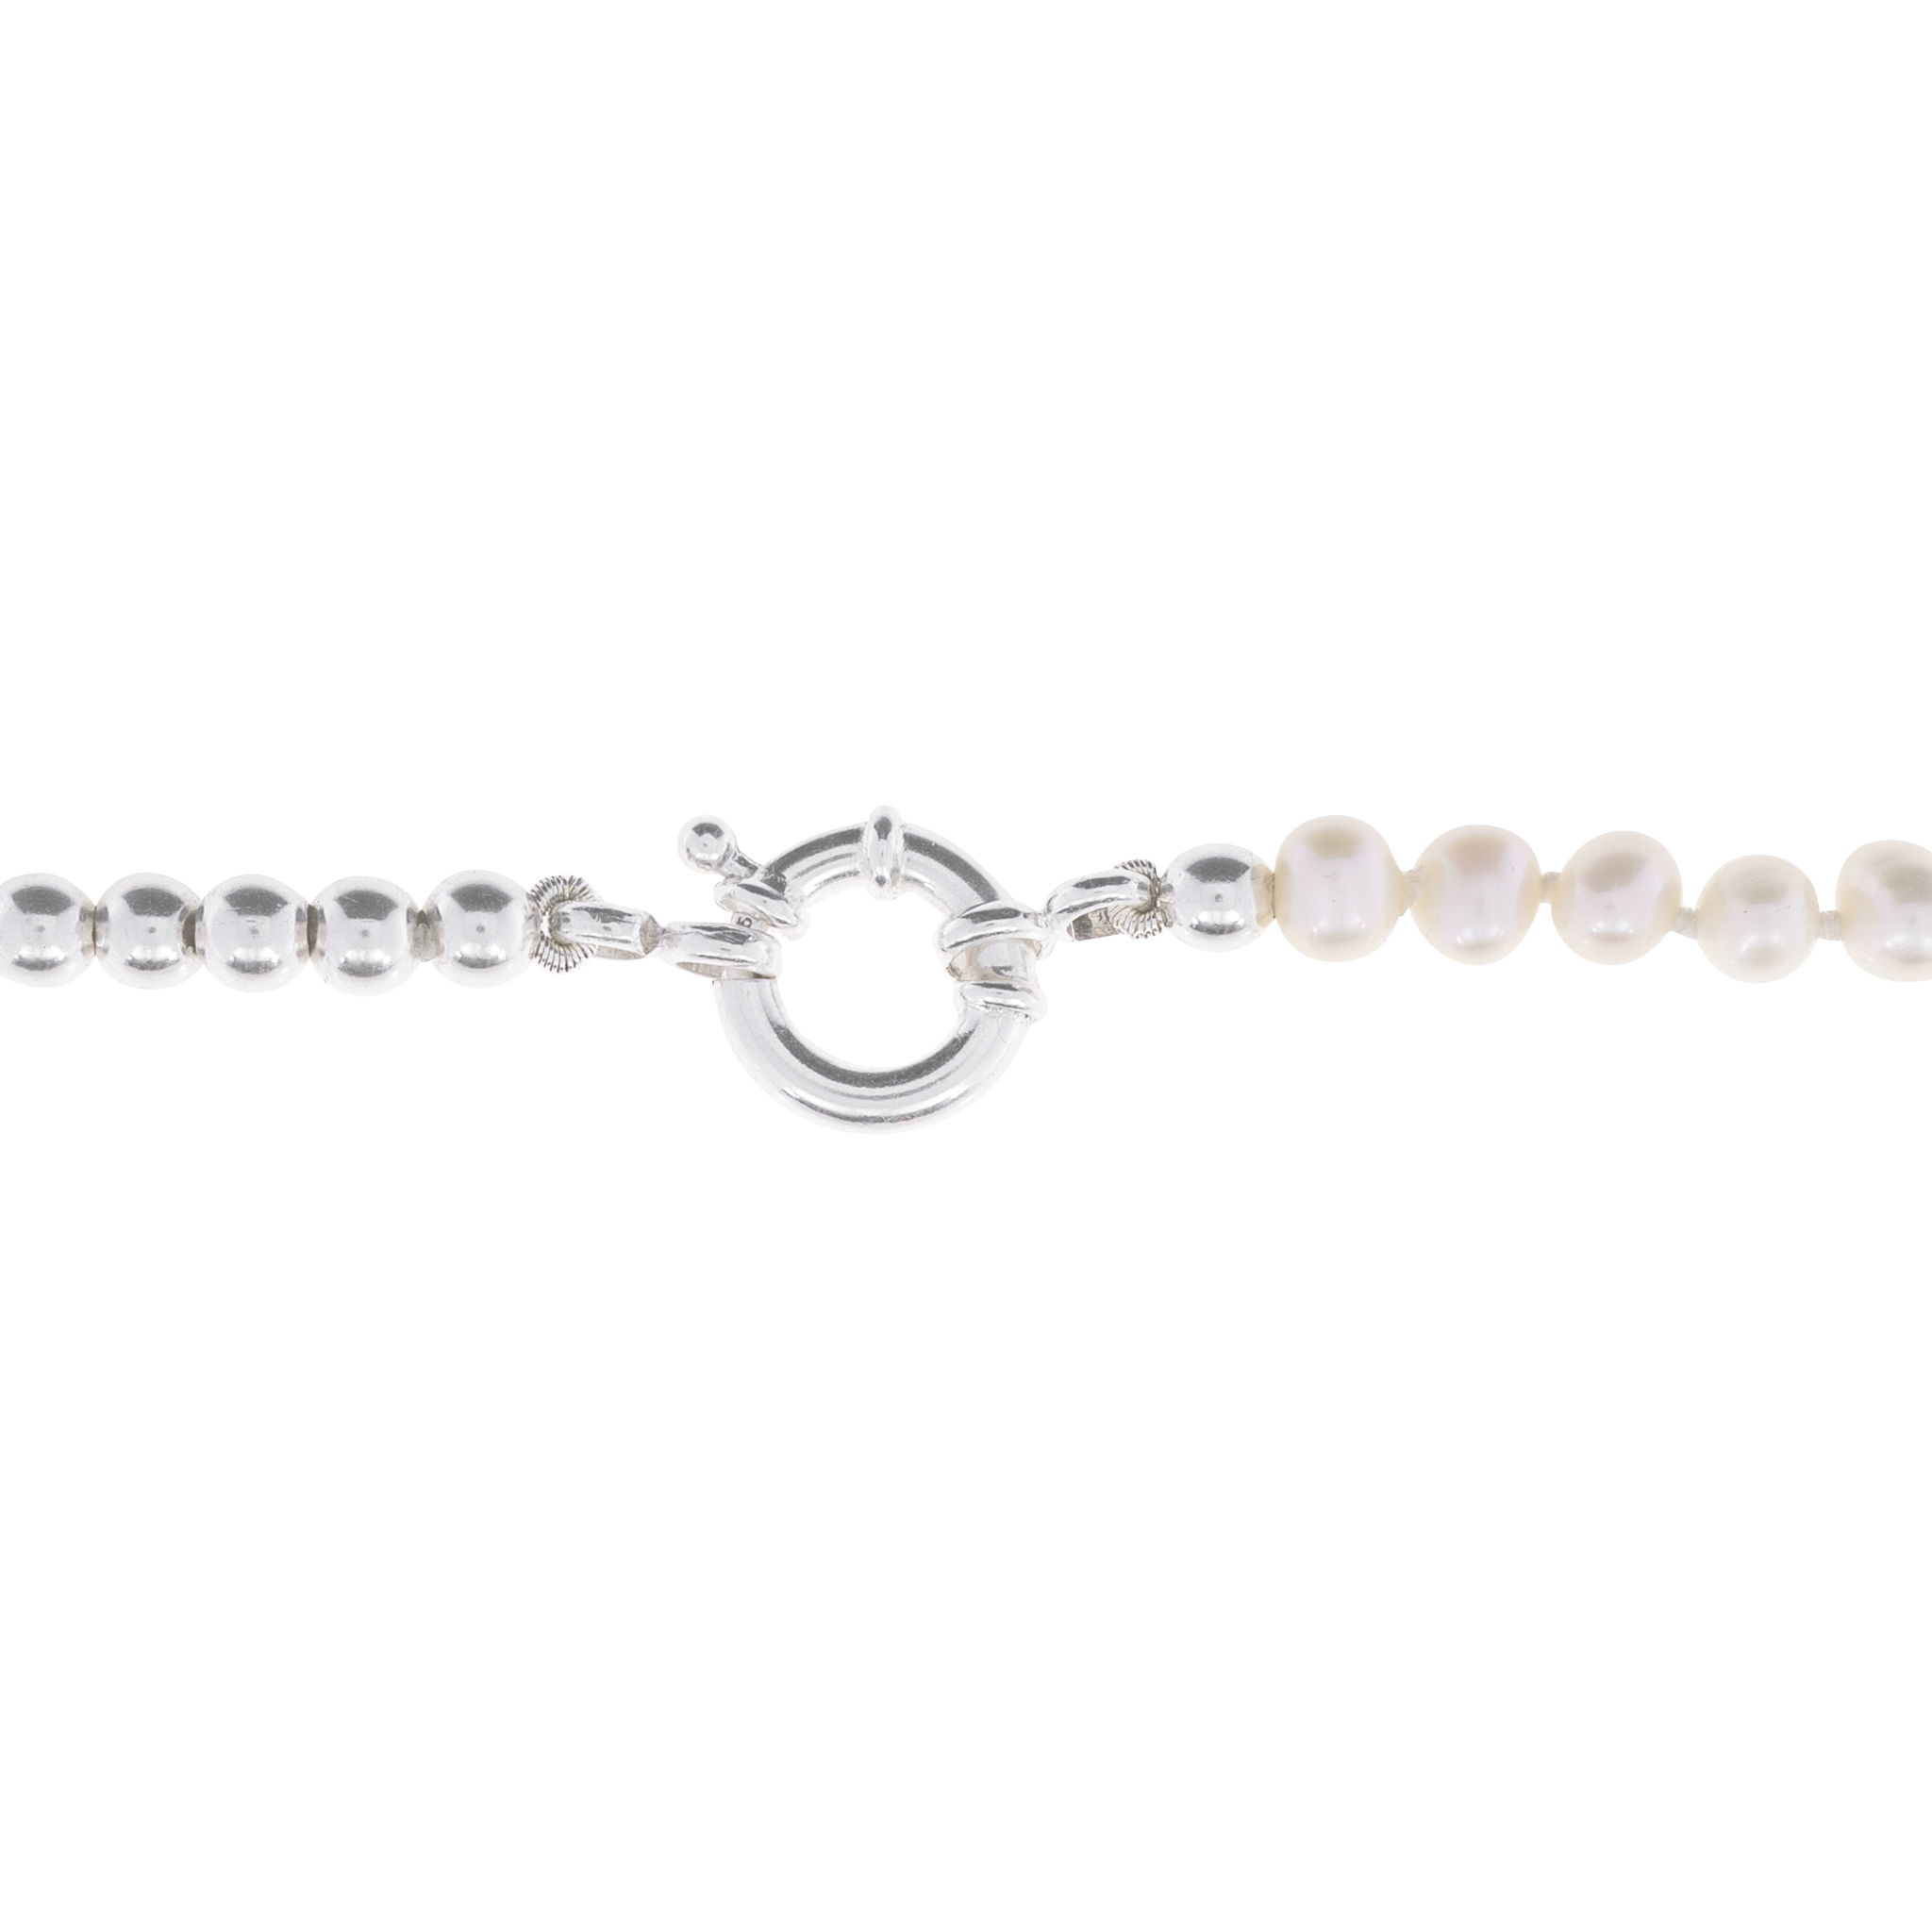 Dual Necklace | Collar de Perlas y Balines en Plata